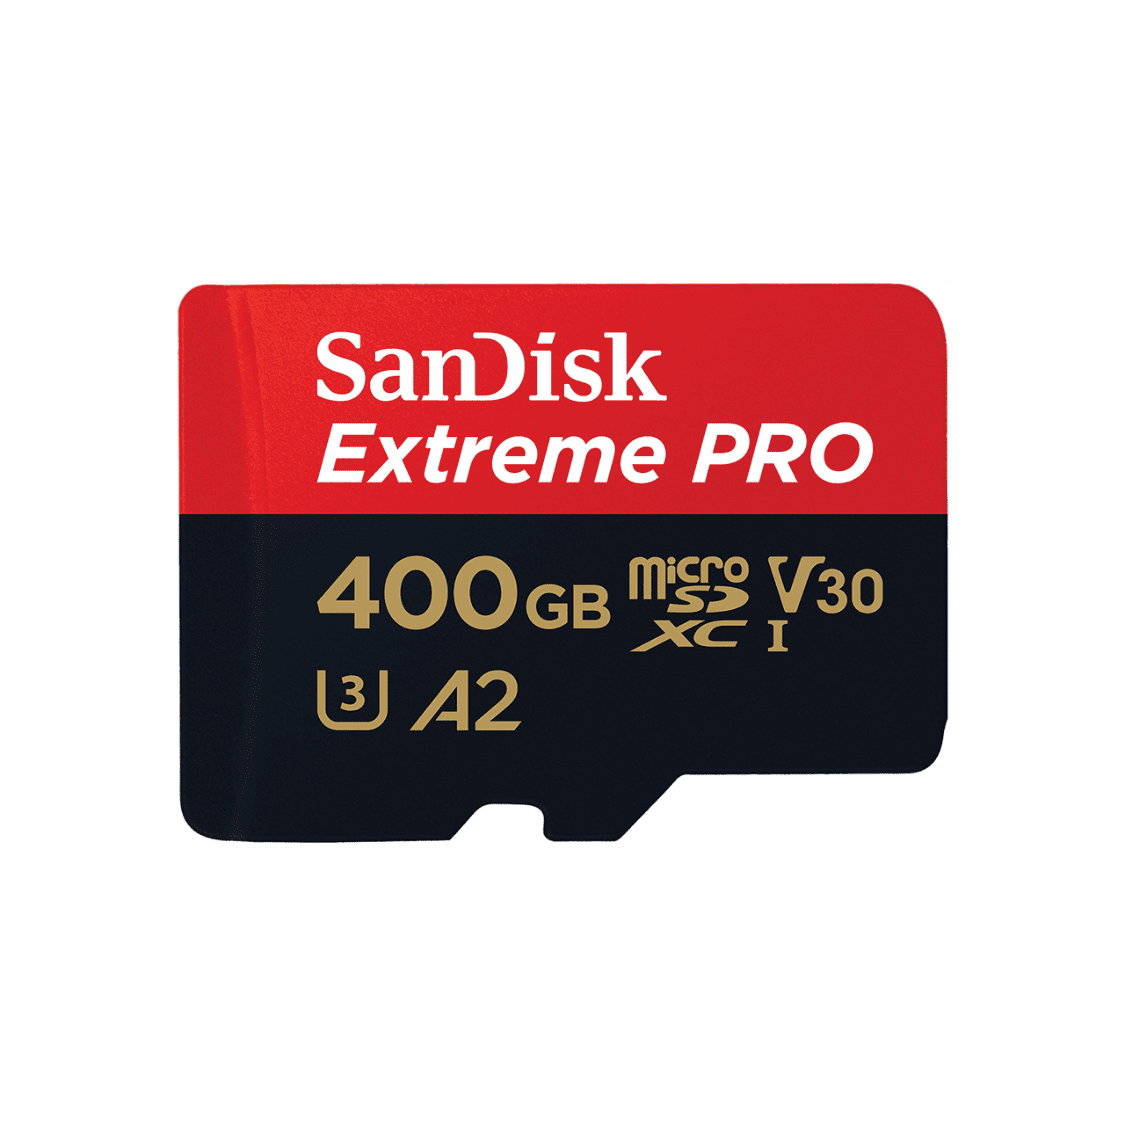 SanDisk Extreme Pro microSDXC™ Card UHS-I 400GB